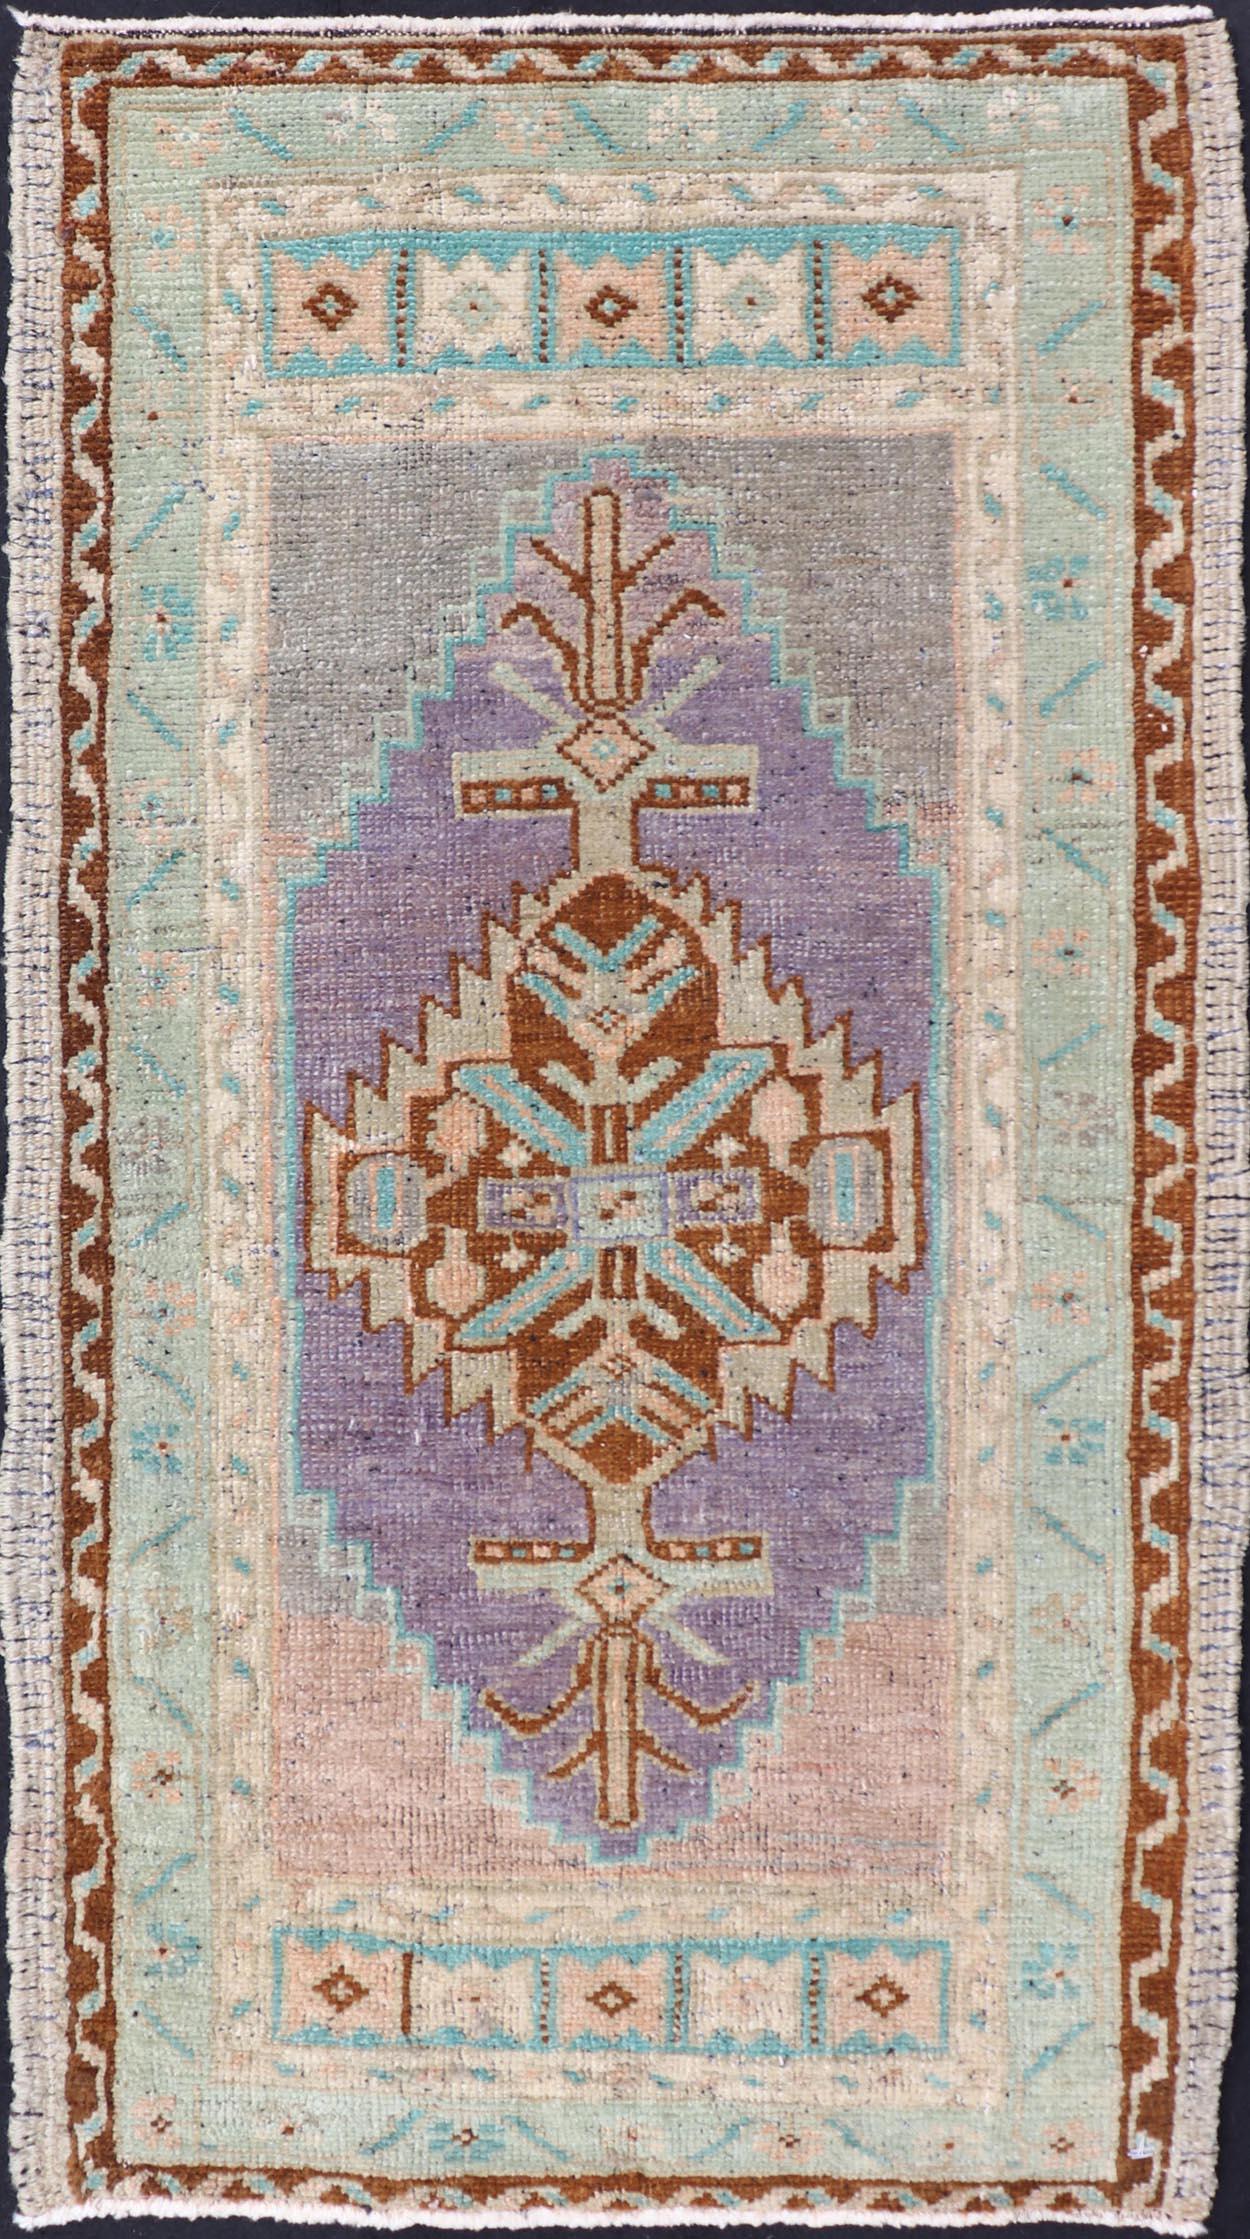 Türkischer Vintage Oushak Teppich mit subgeometrischem Medaillon-Design 